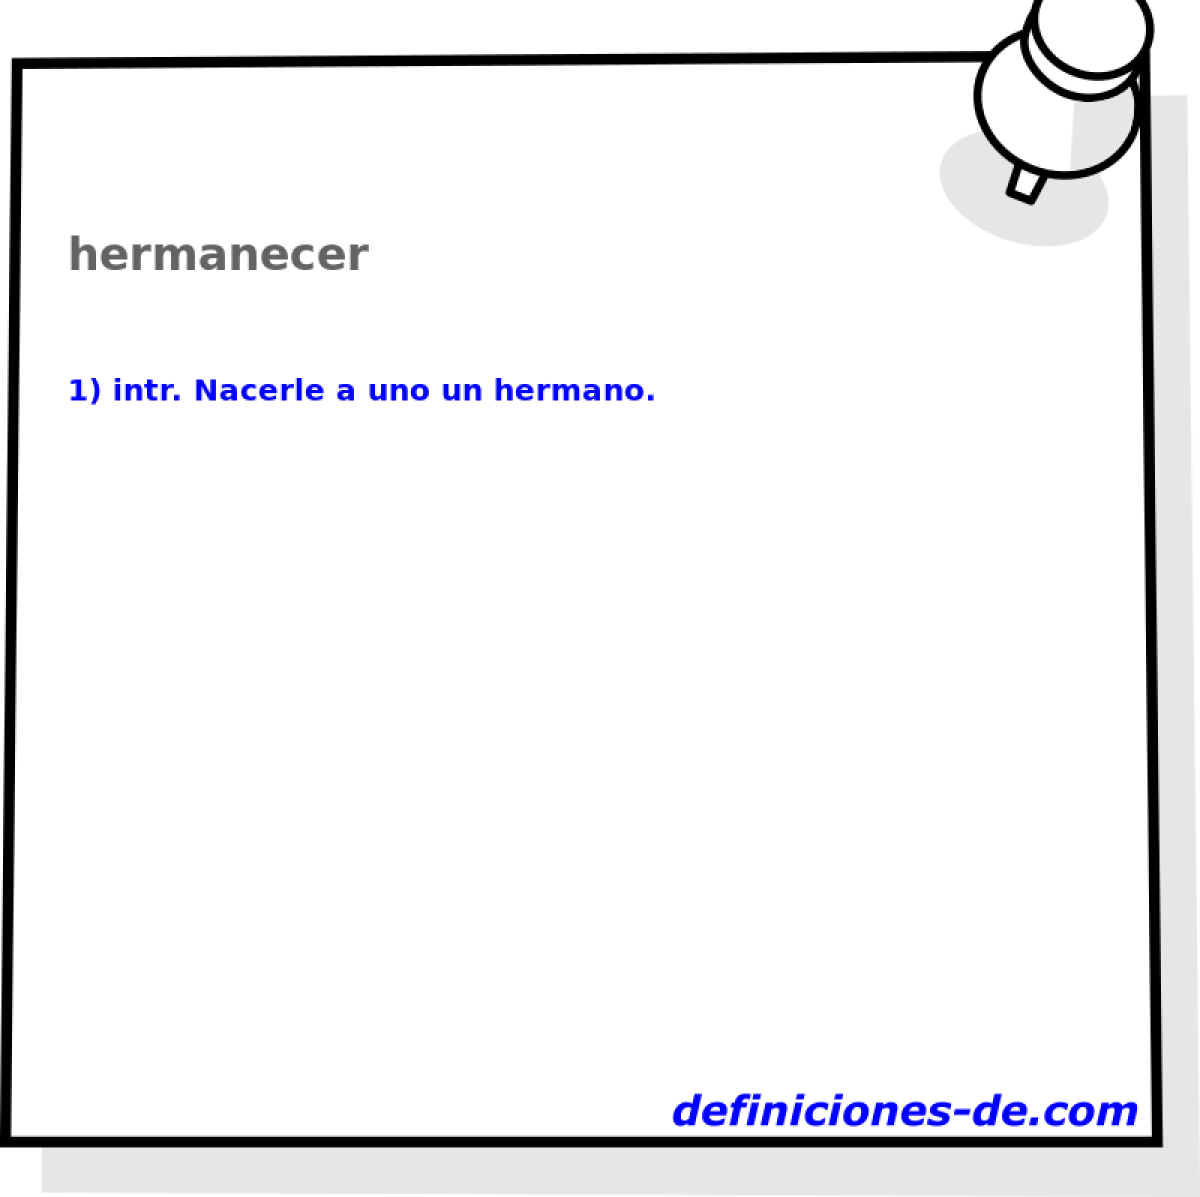 hermanecer 